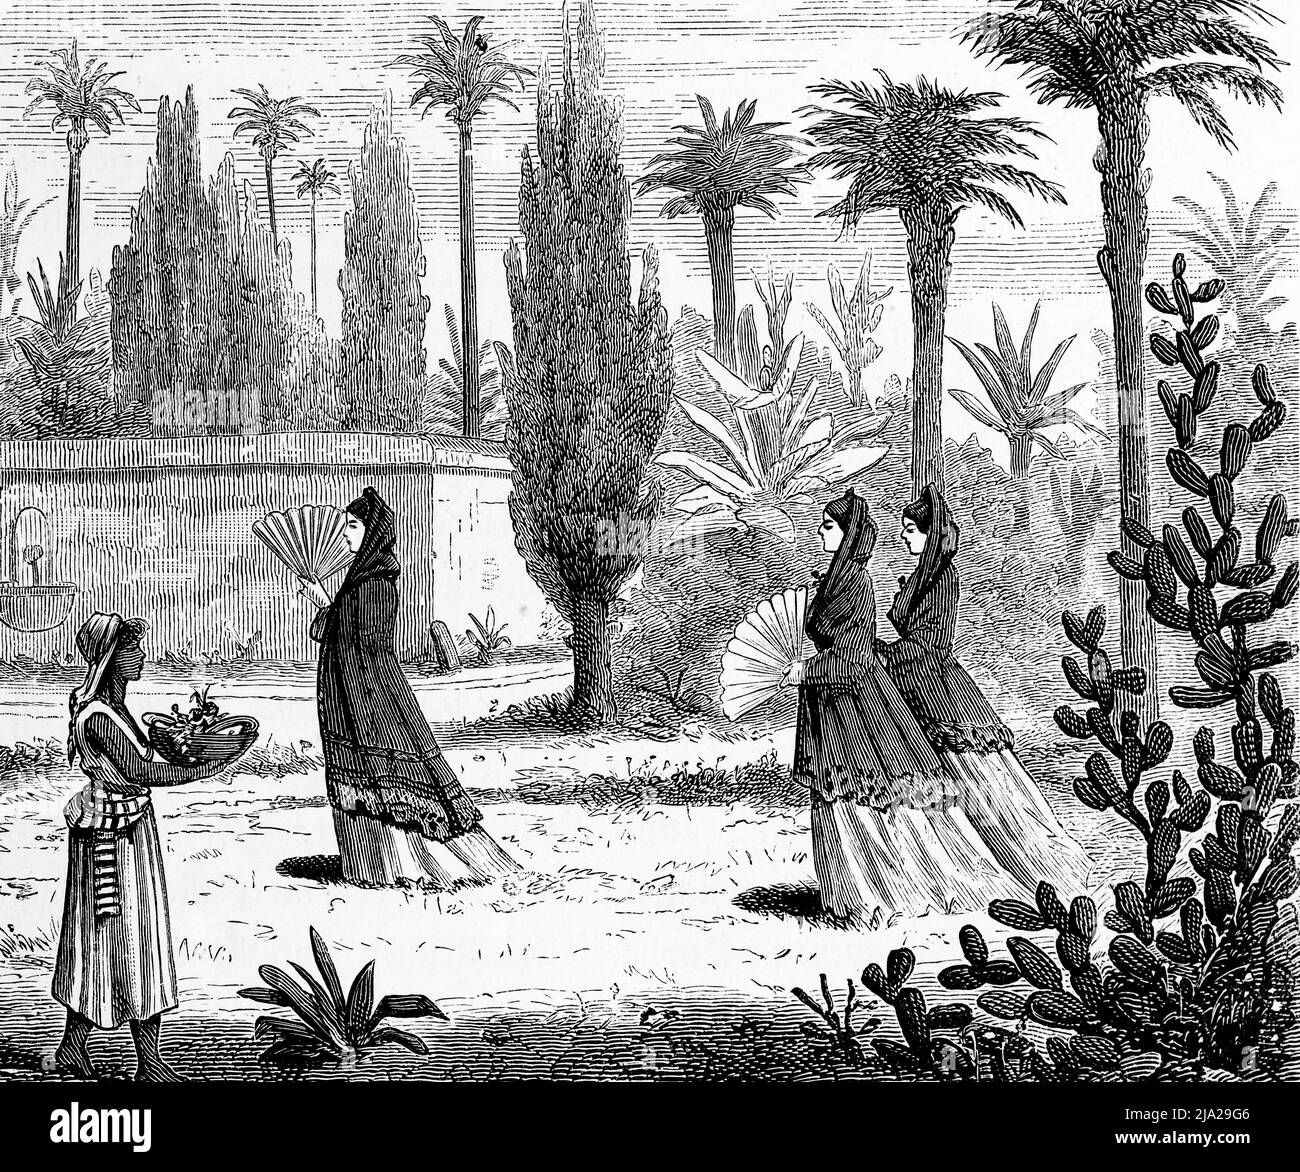 Trois femmes distinguées, vendeuse, marche, jardin, palmiers, Cactus, ventilateur, mur, illustration historique 1881, Mexique Banque D'Images